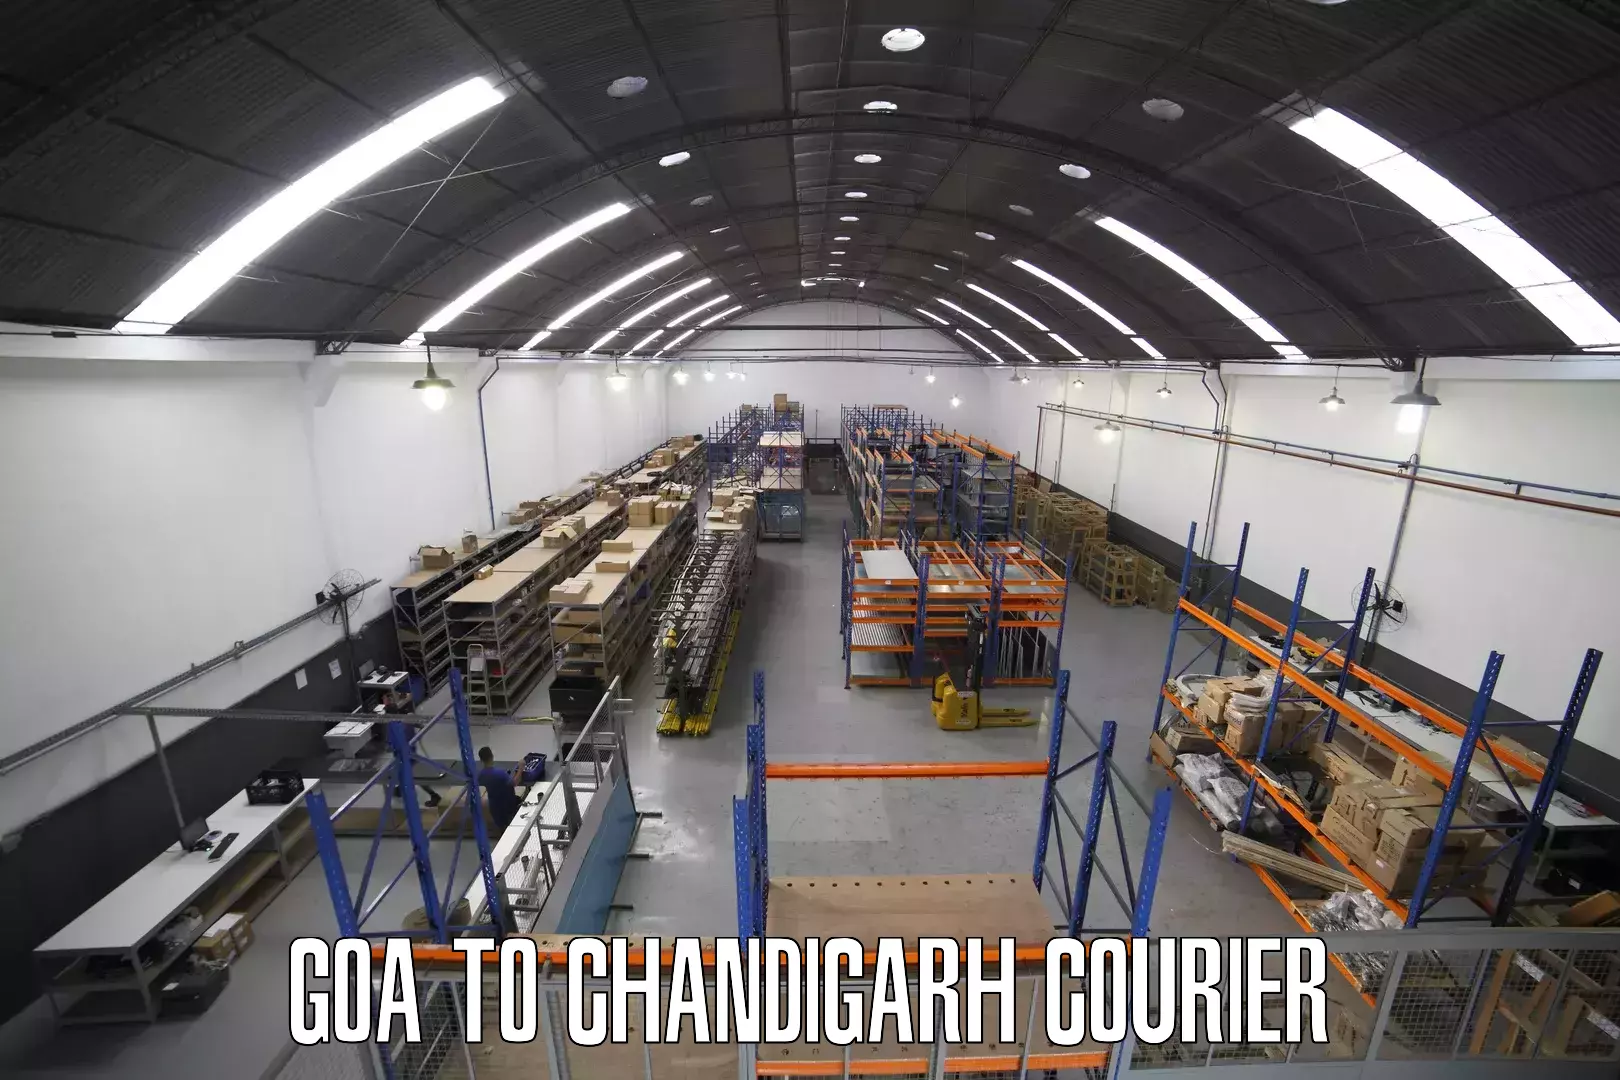 Efficient freight service Goa to Chandigarh